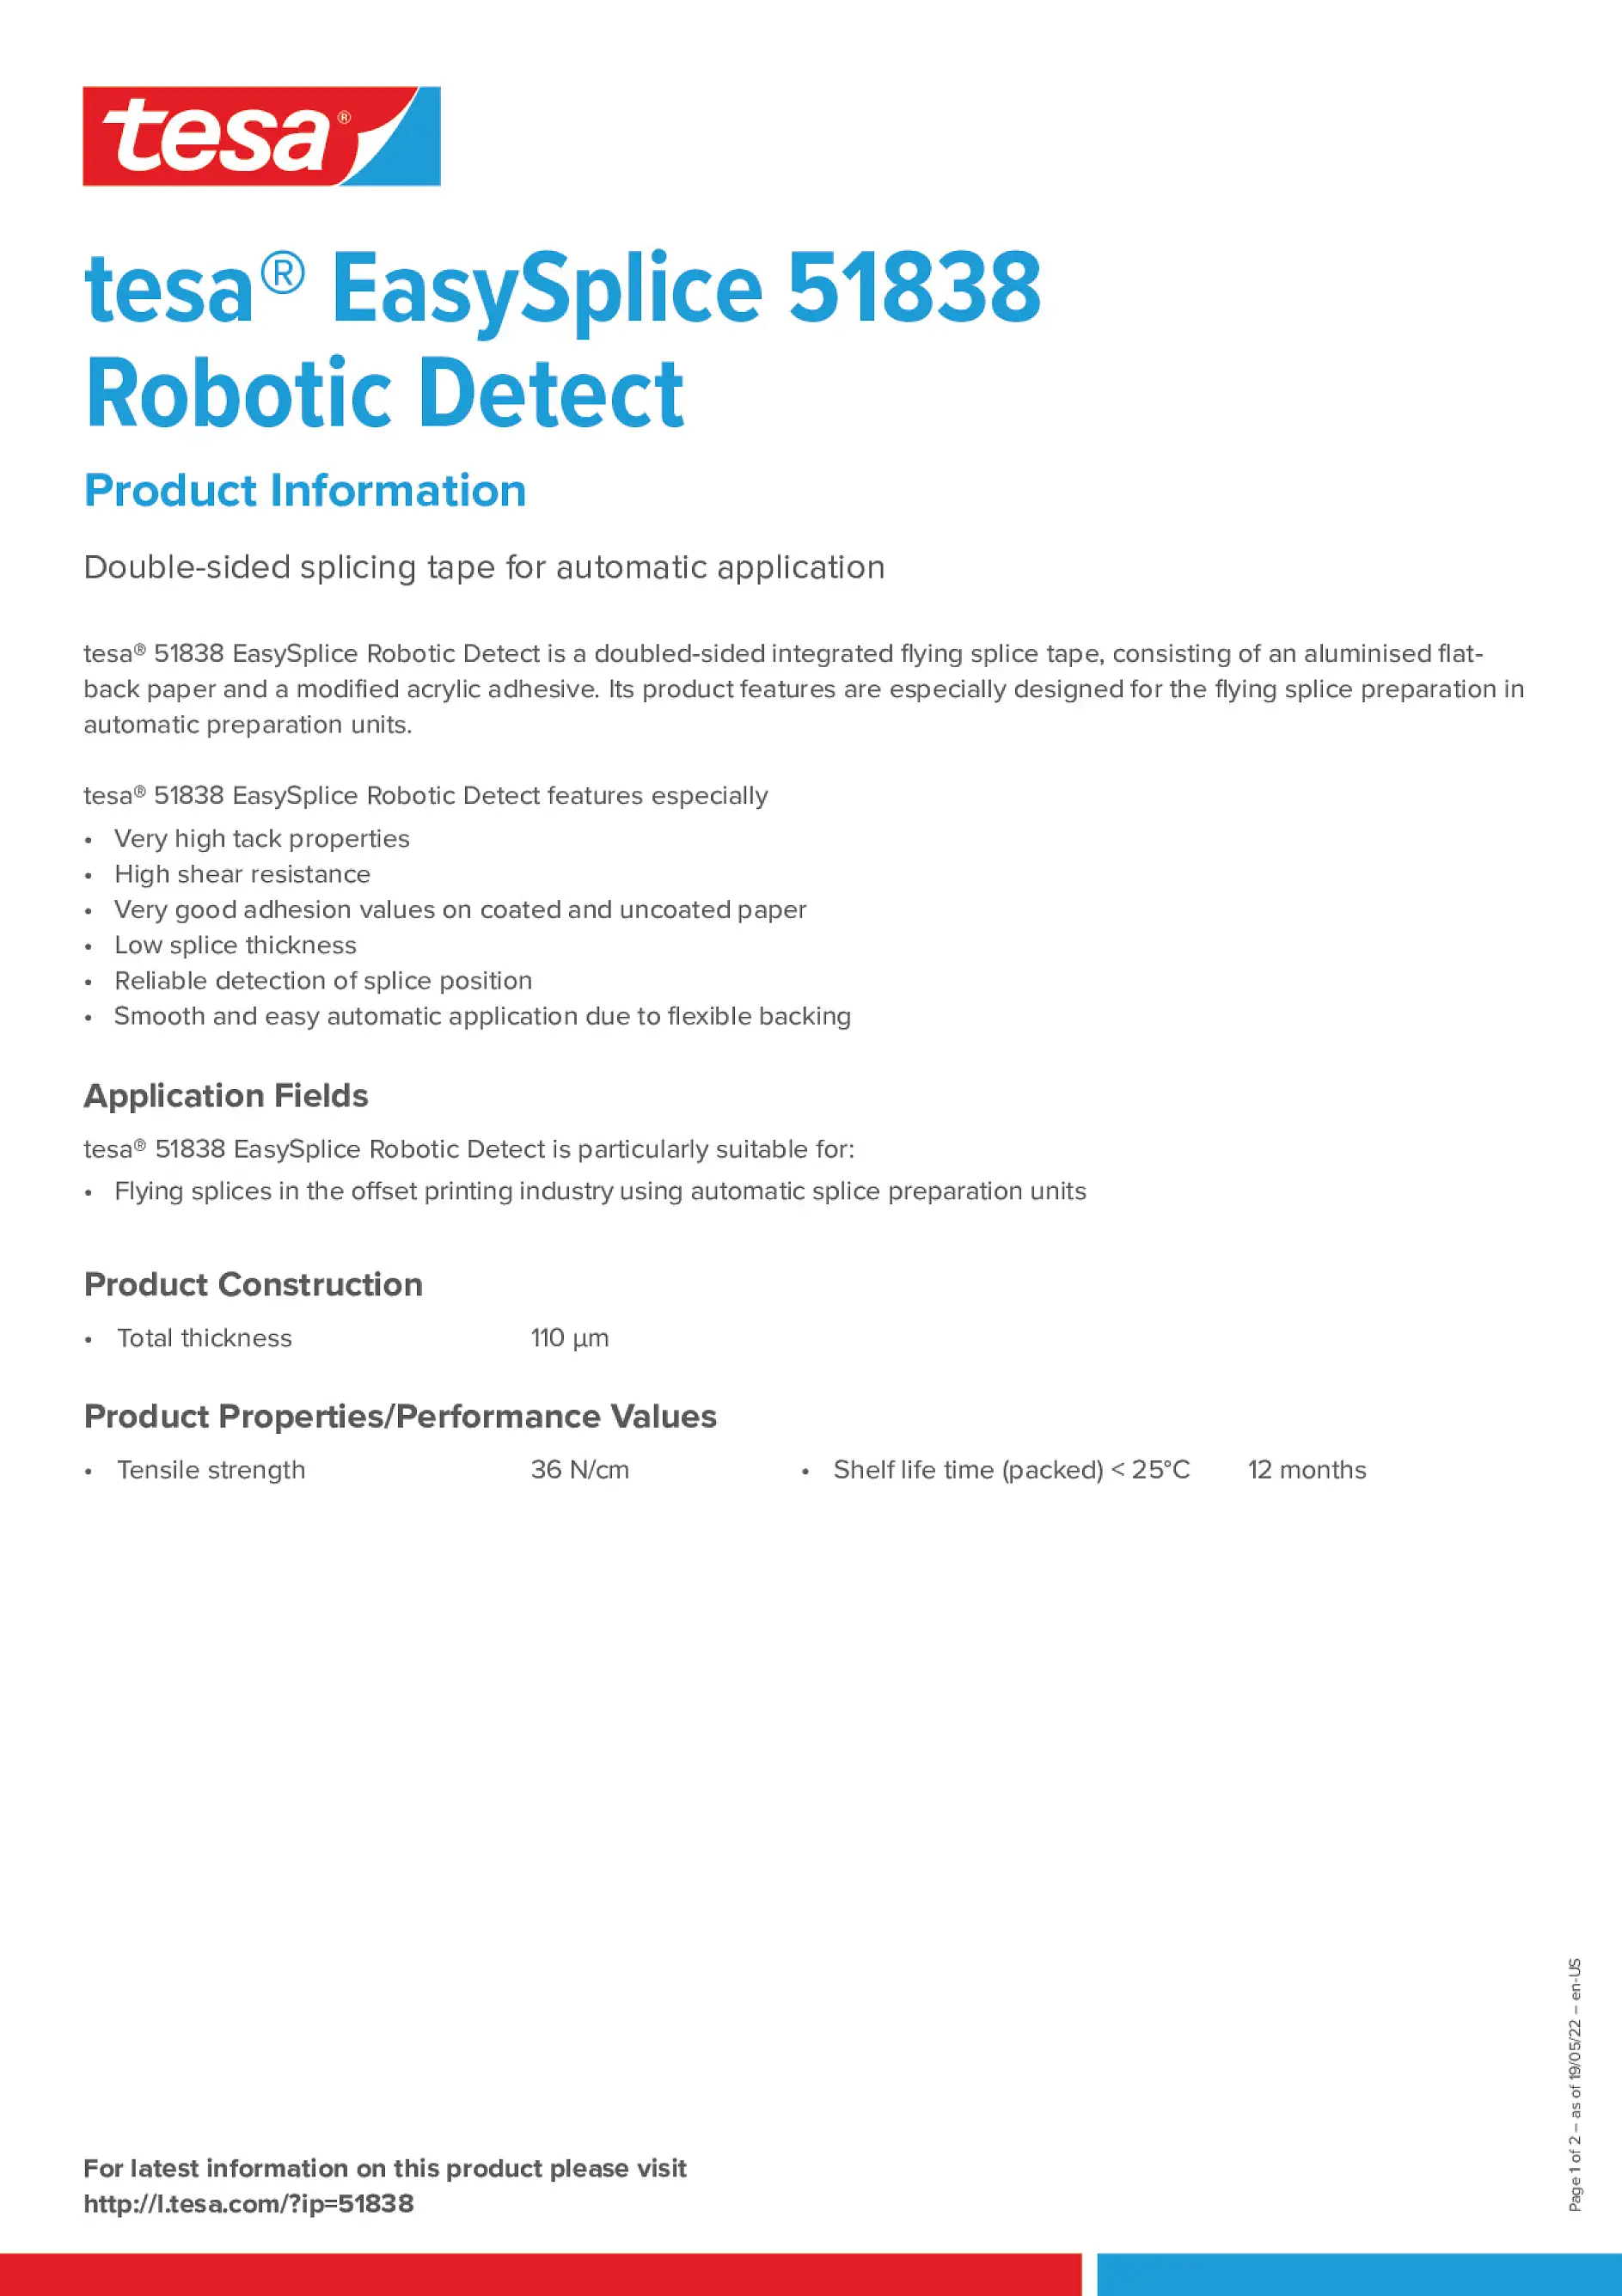 tesa_EasySplice_51838_Robotic_Detect_en-US